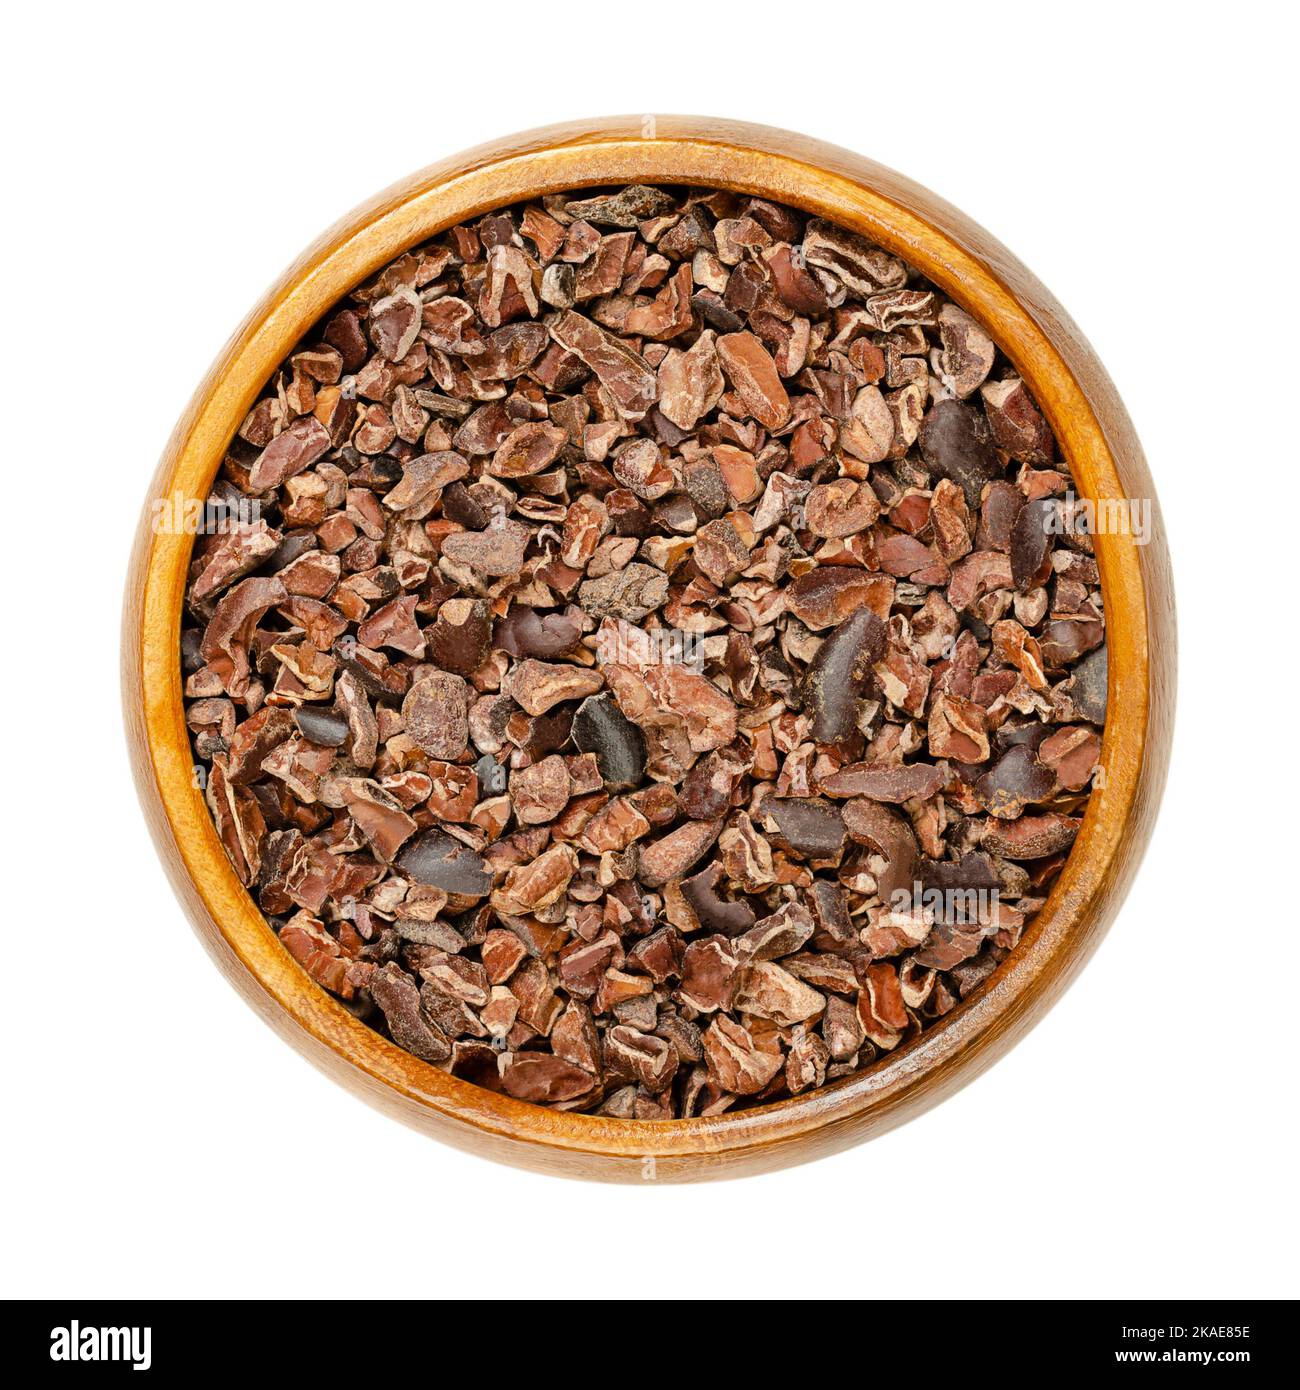 Des pointes de cacao dans un bol en bois. Morceaux de grains de cacao fermentés séchés, graines de Theobroma cacao, généralement transformés en chocolat. Banque D'Images